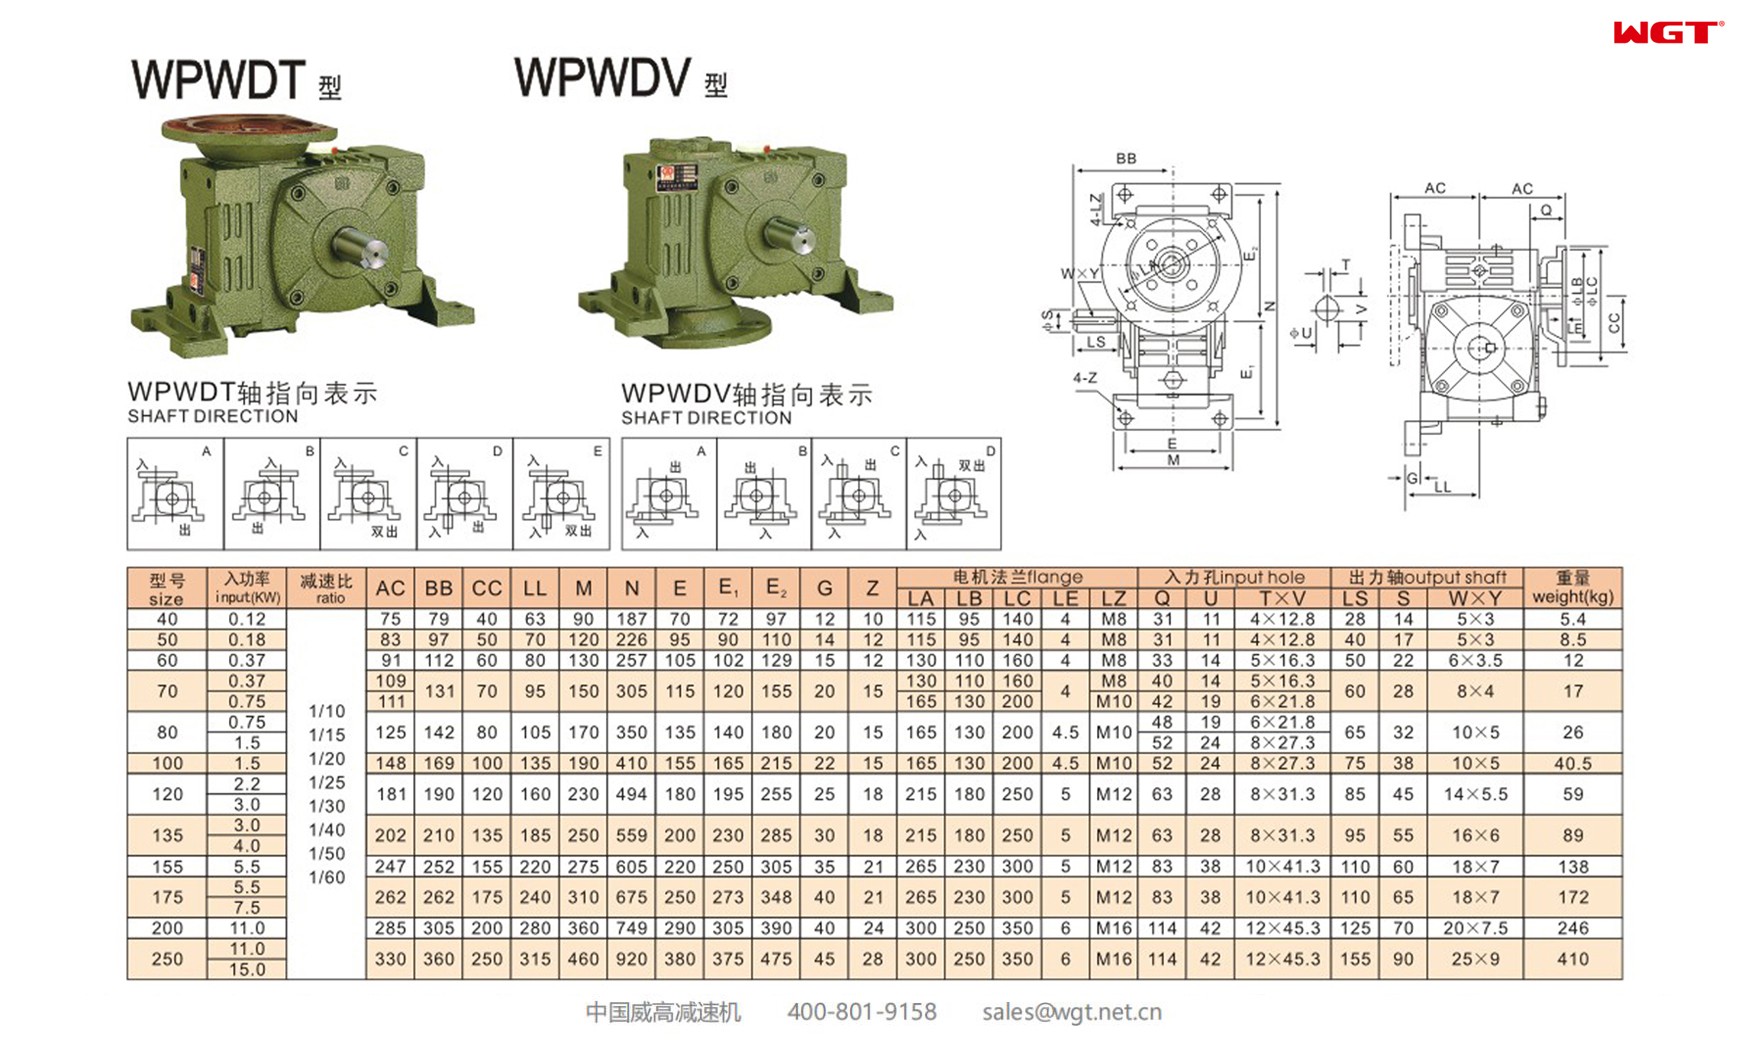 WPWDT135 worm gear reducer universal speed reducer